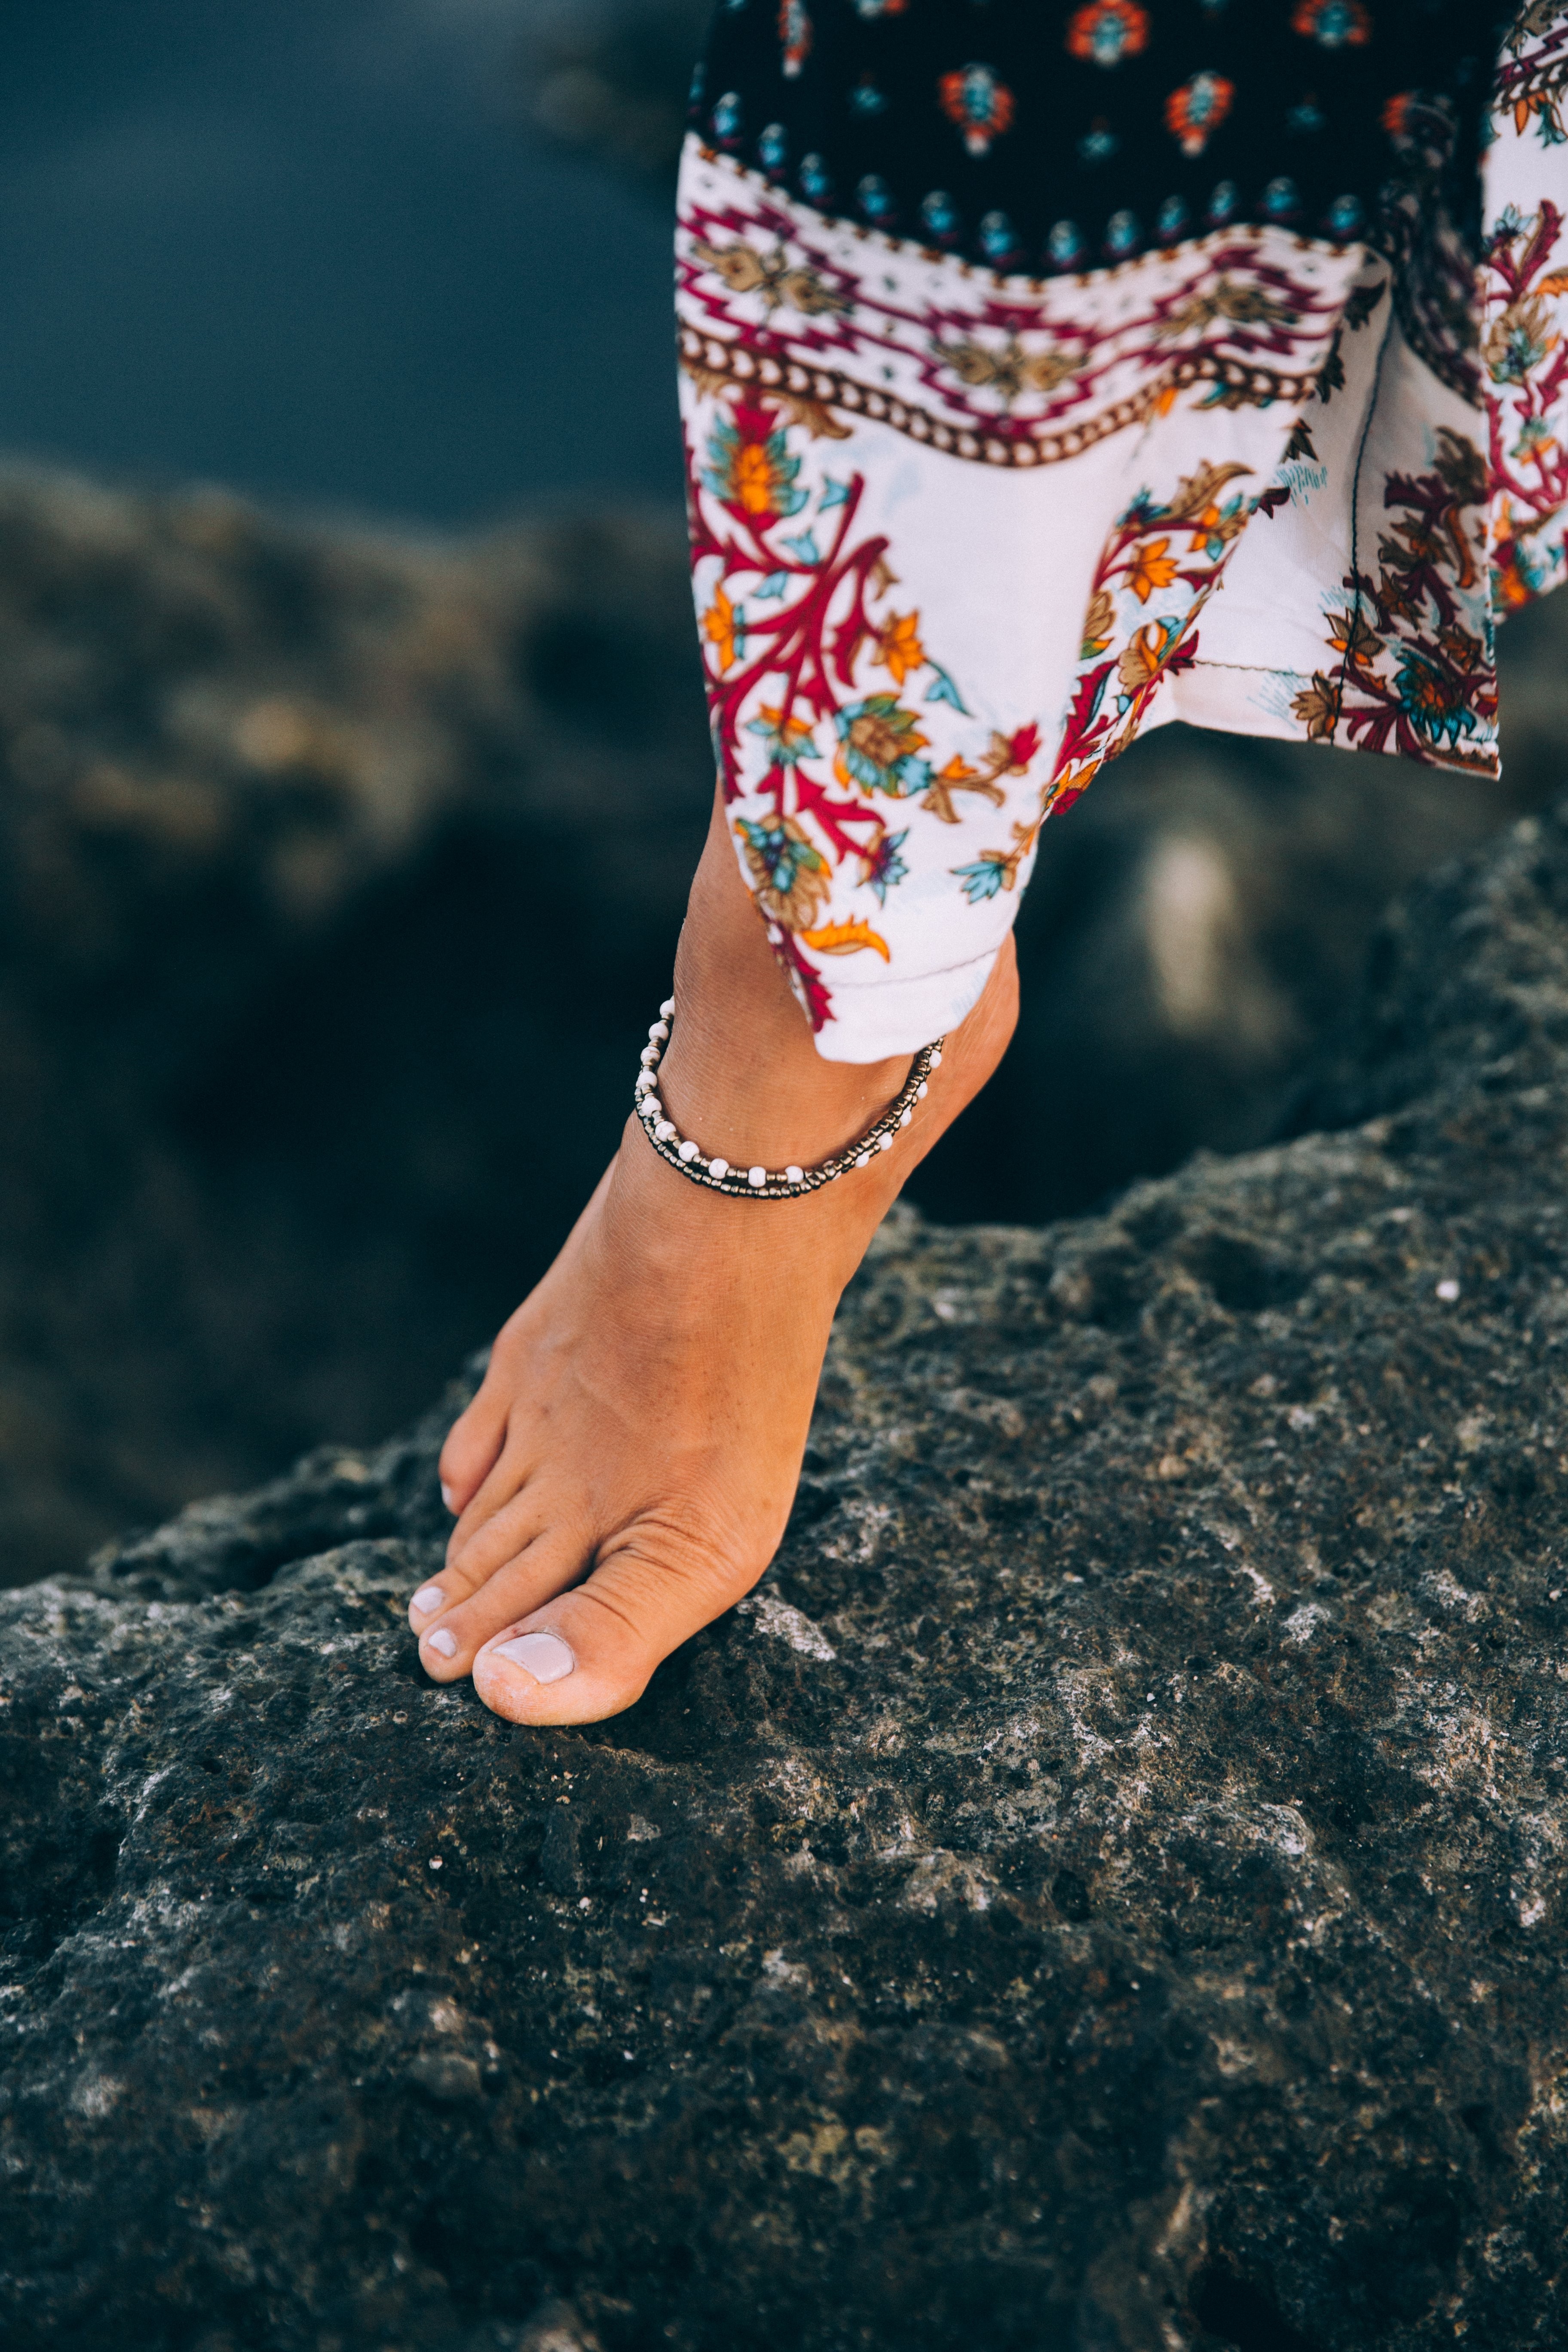 Uma mulher bronzeada exibe uma tornozeleira na foto do litoral rochoso